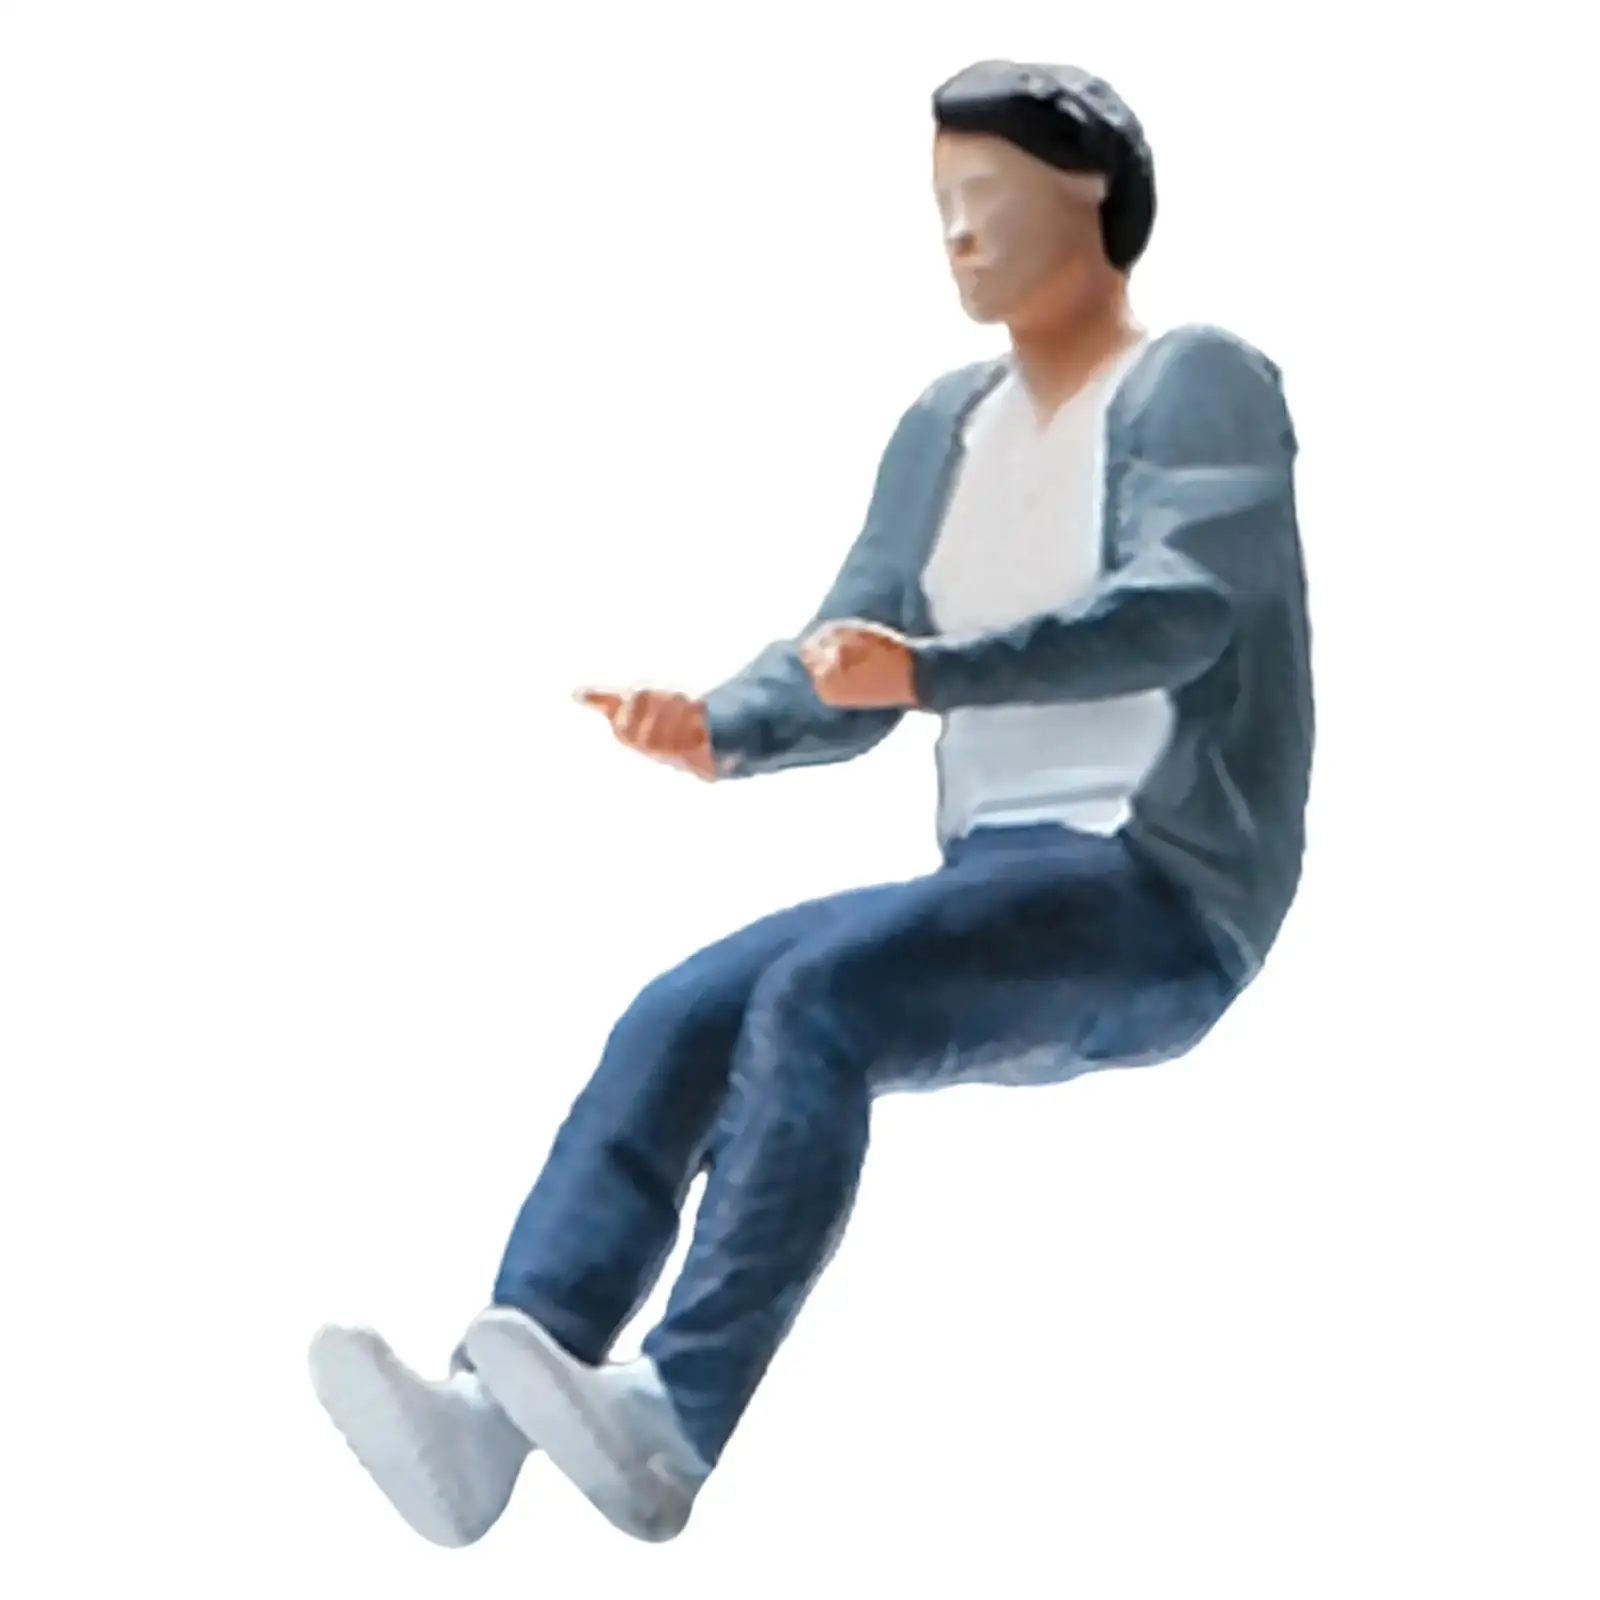 1/64 People Figures Miniature People Figurines for Diorama DIY Scene Decor